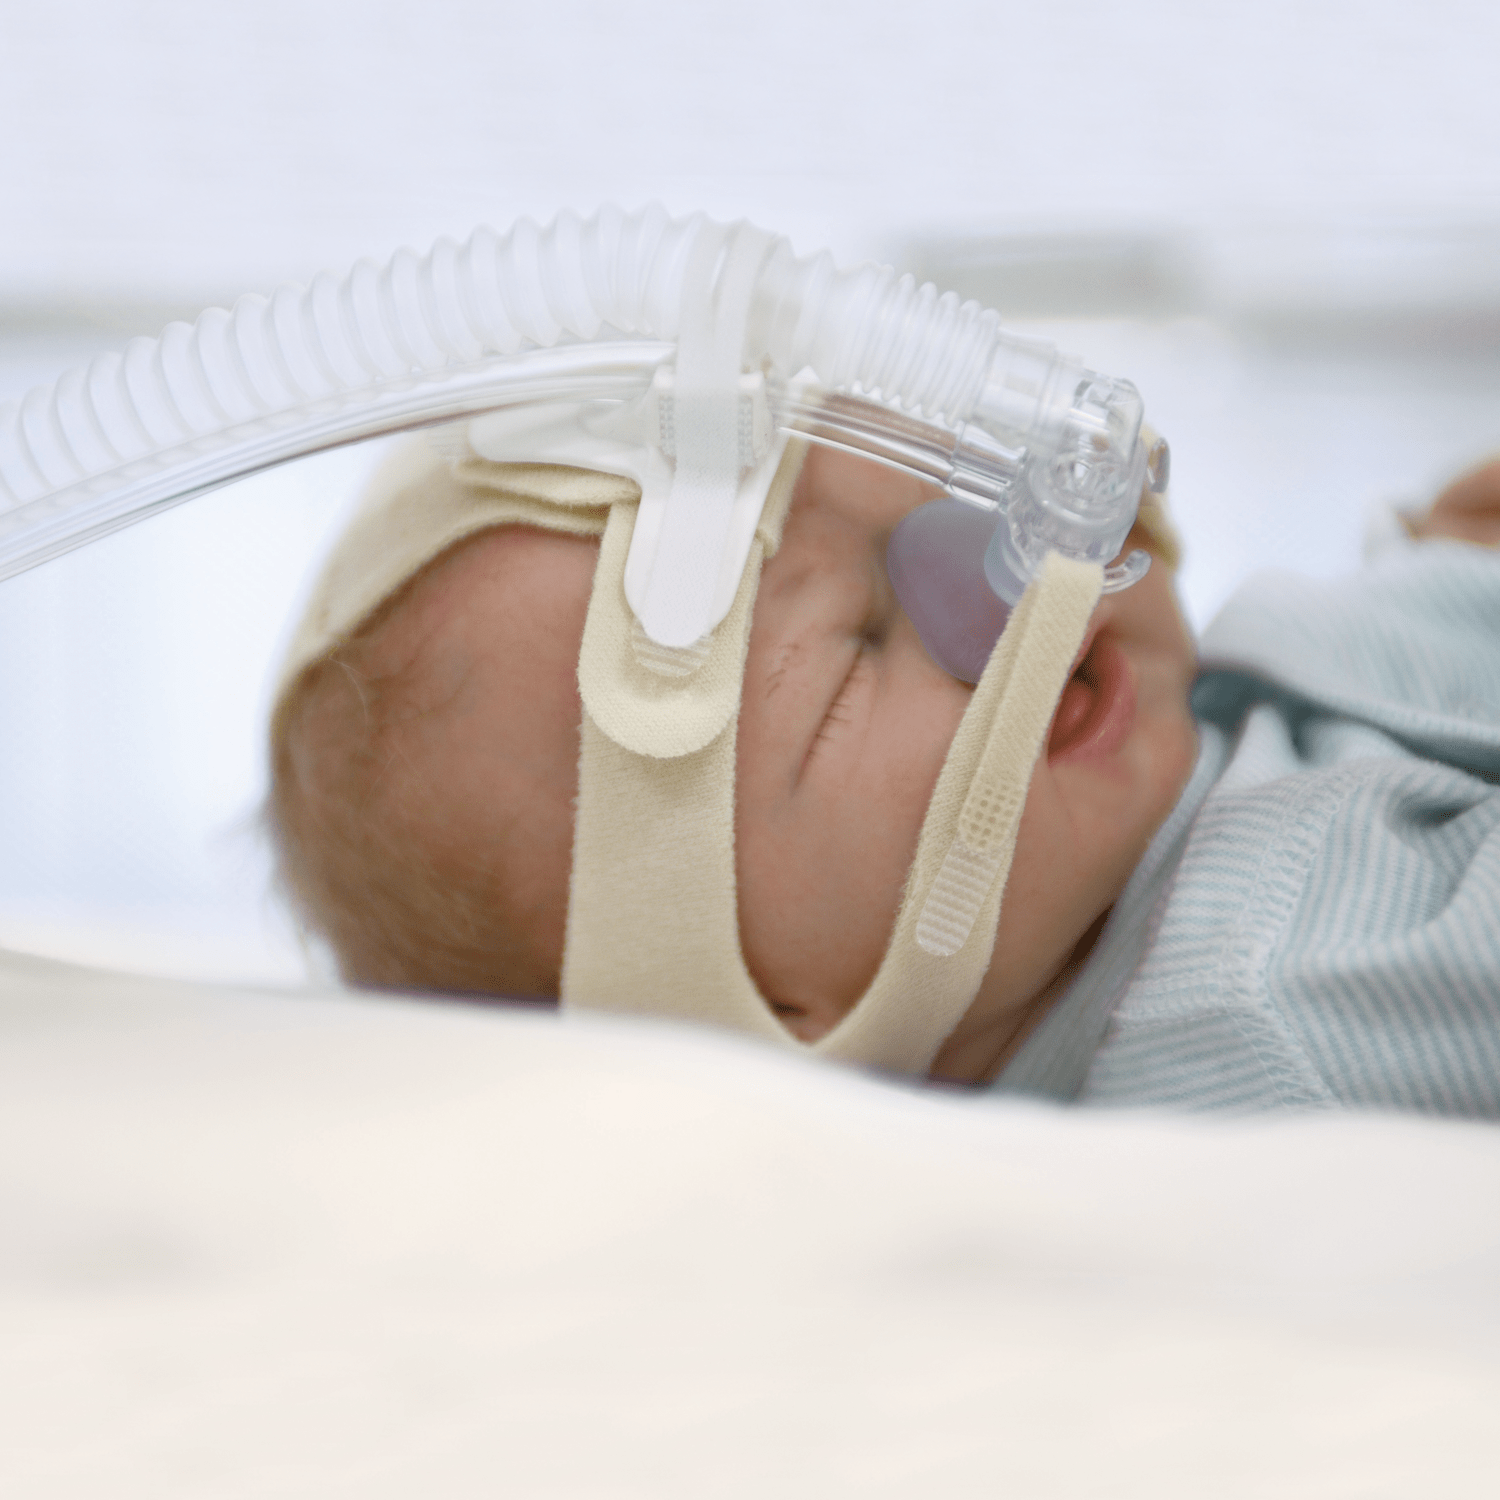 Achat d’un appareil de ventilation en pression positive continue pour nouveau-nés